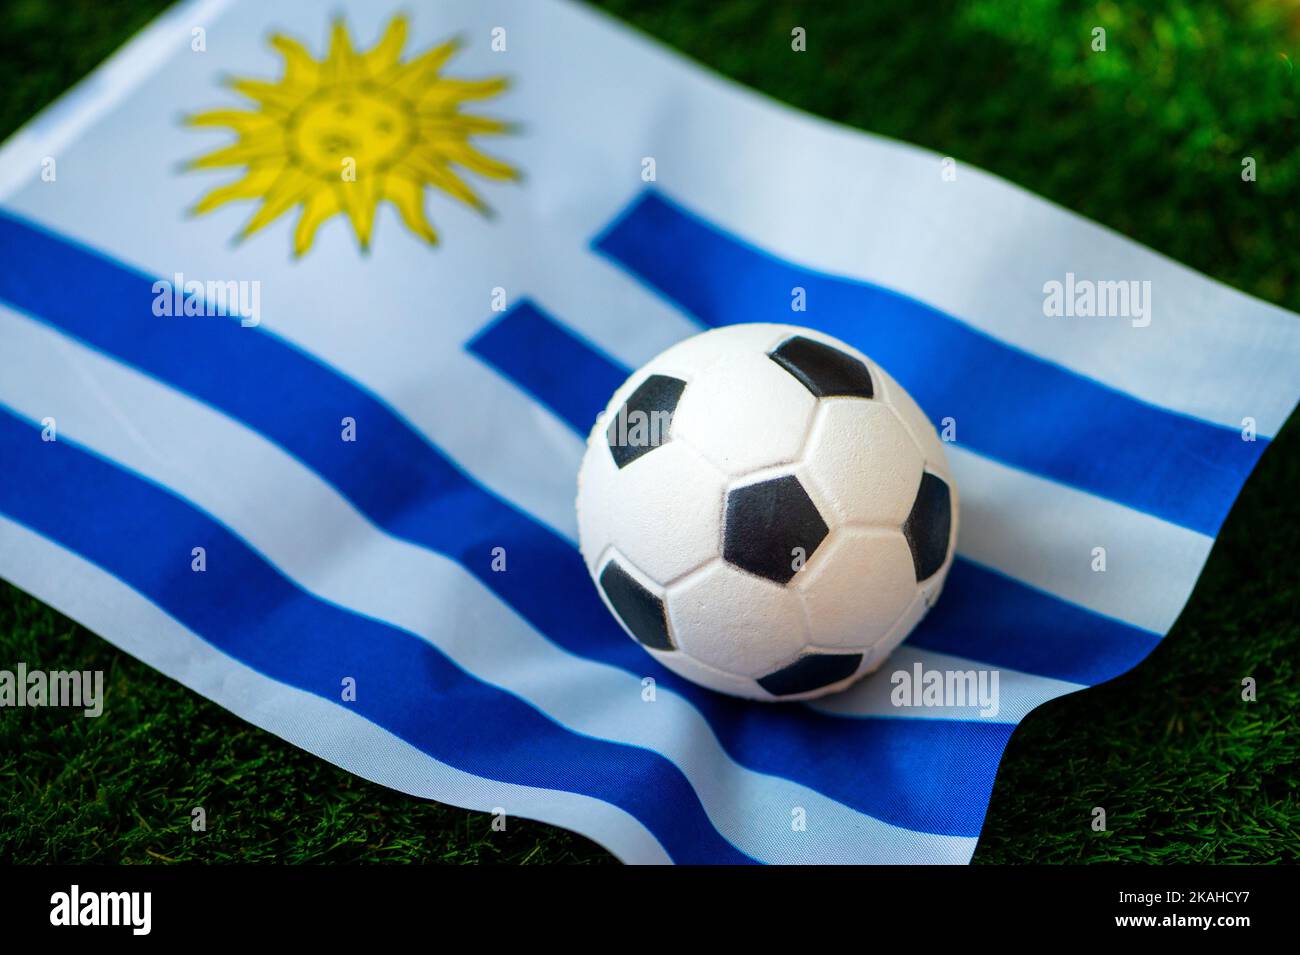 ESCUDOS DO URUGUAI in 2023  National football teams, Football